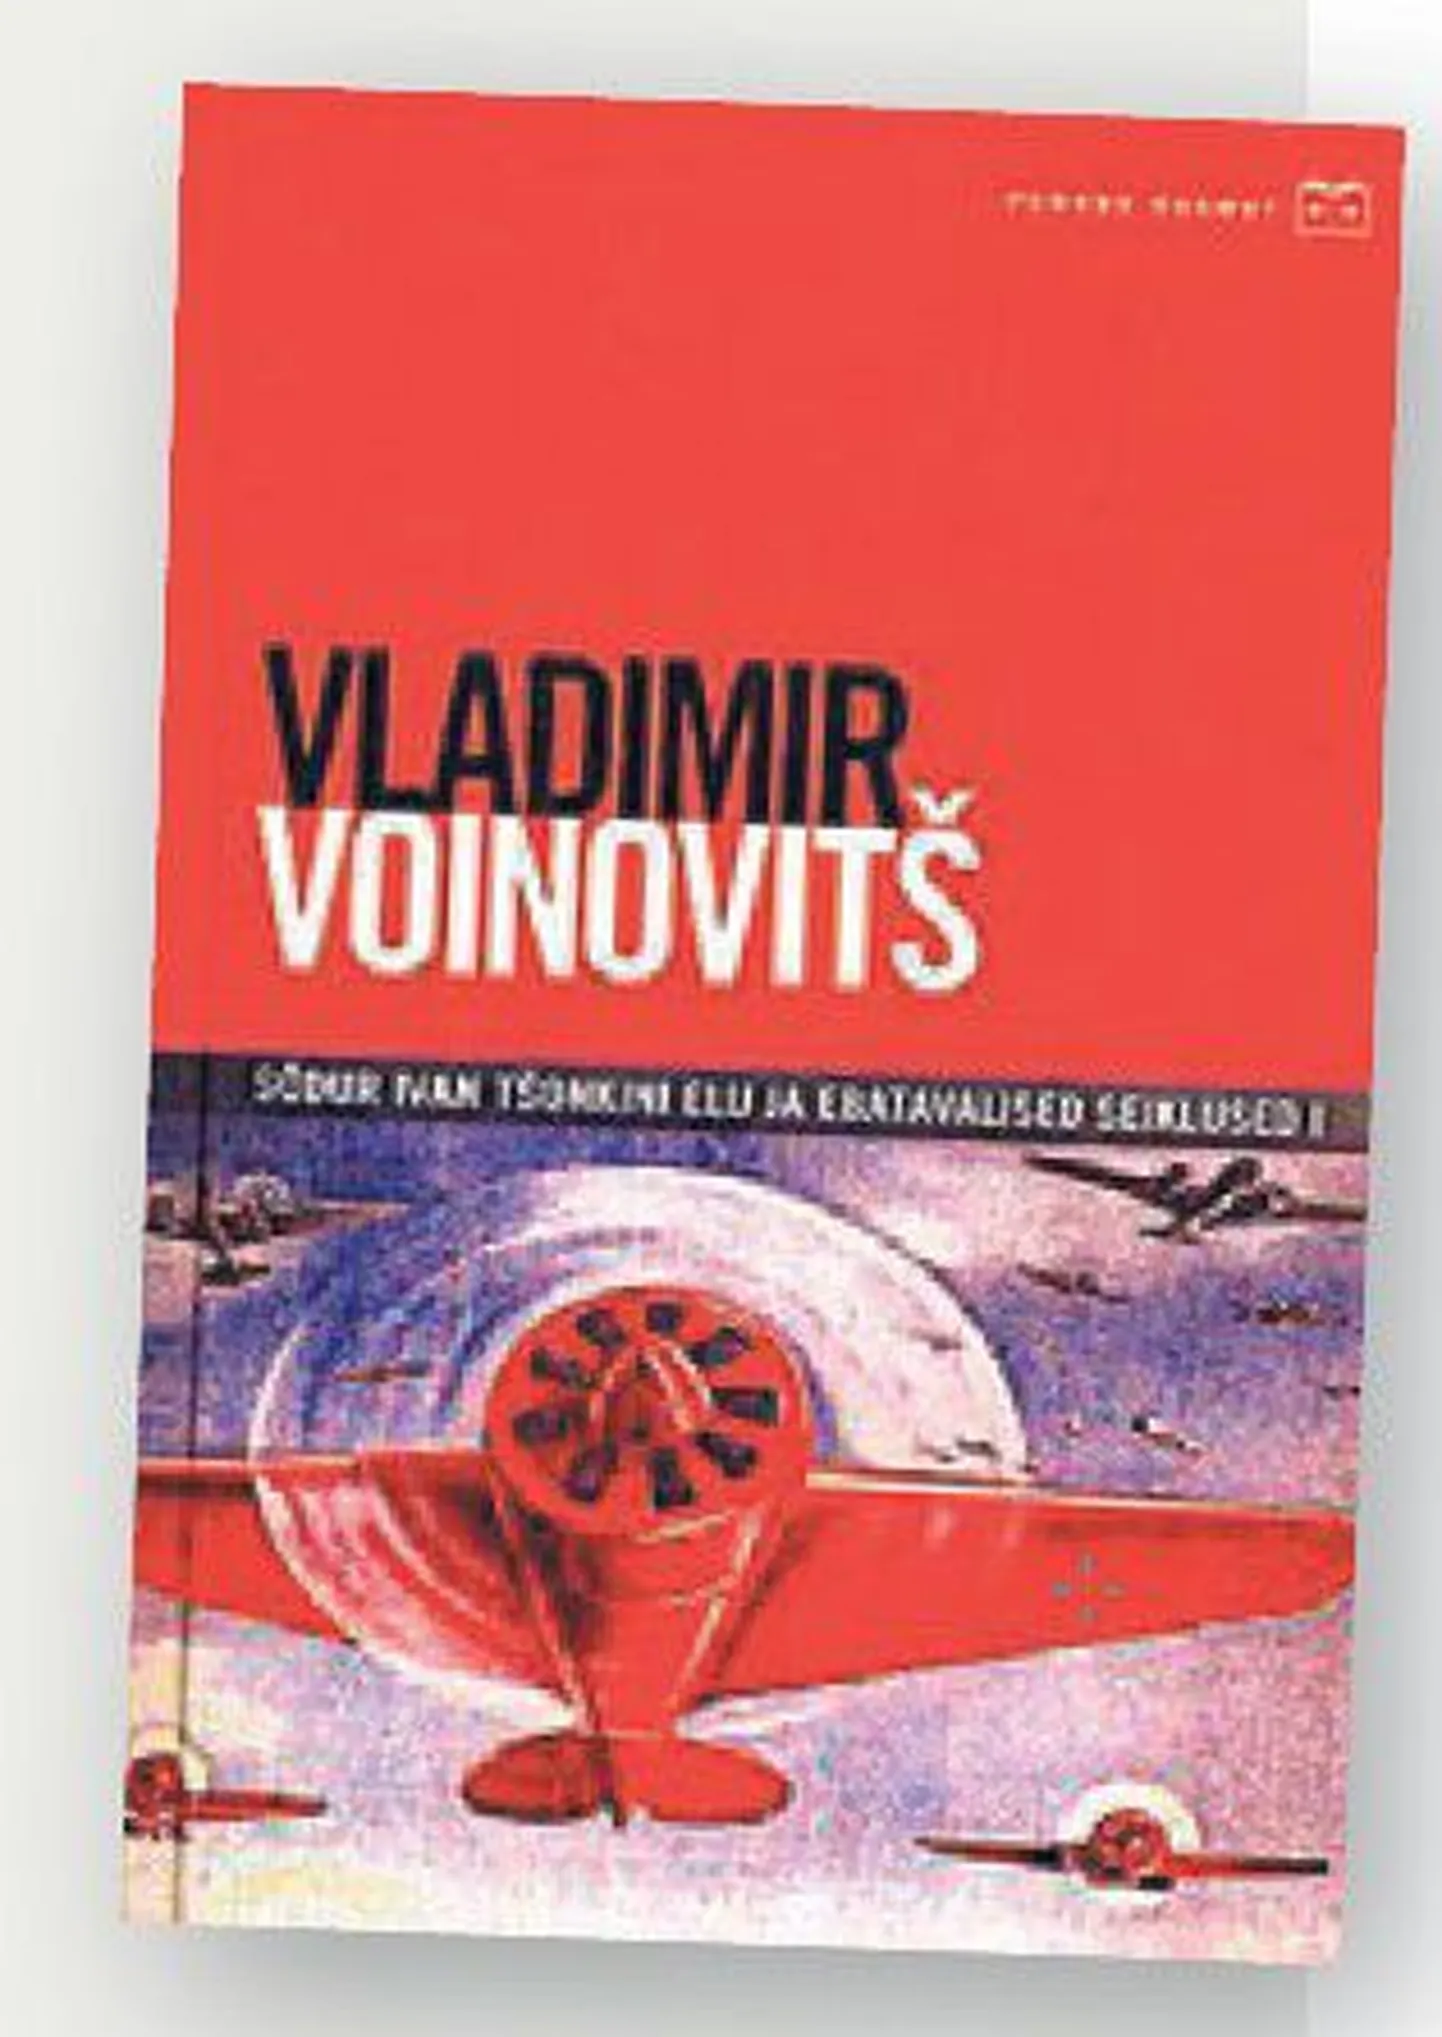 Raamat
Vladimir Voinovitš
«Sõdur Ivan Tšonkini elu ja ­eba­tavalised seiklused I»
Kirjastus ­Tänapäev, 
tõlkinud Jüri Ojamaa